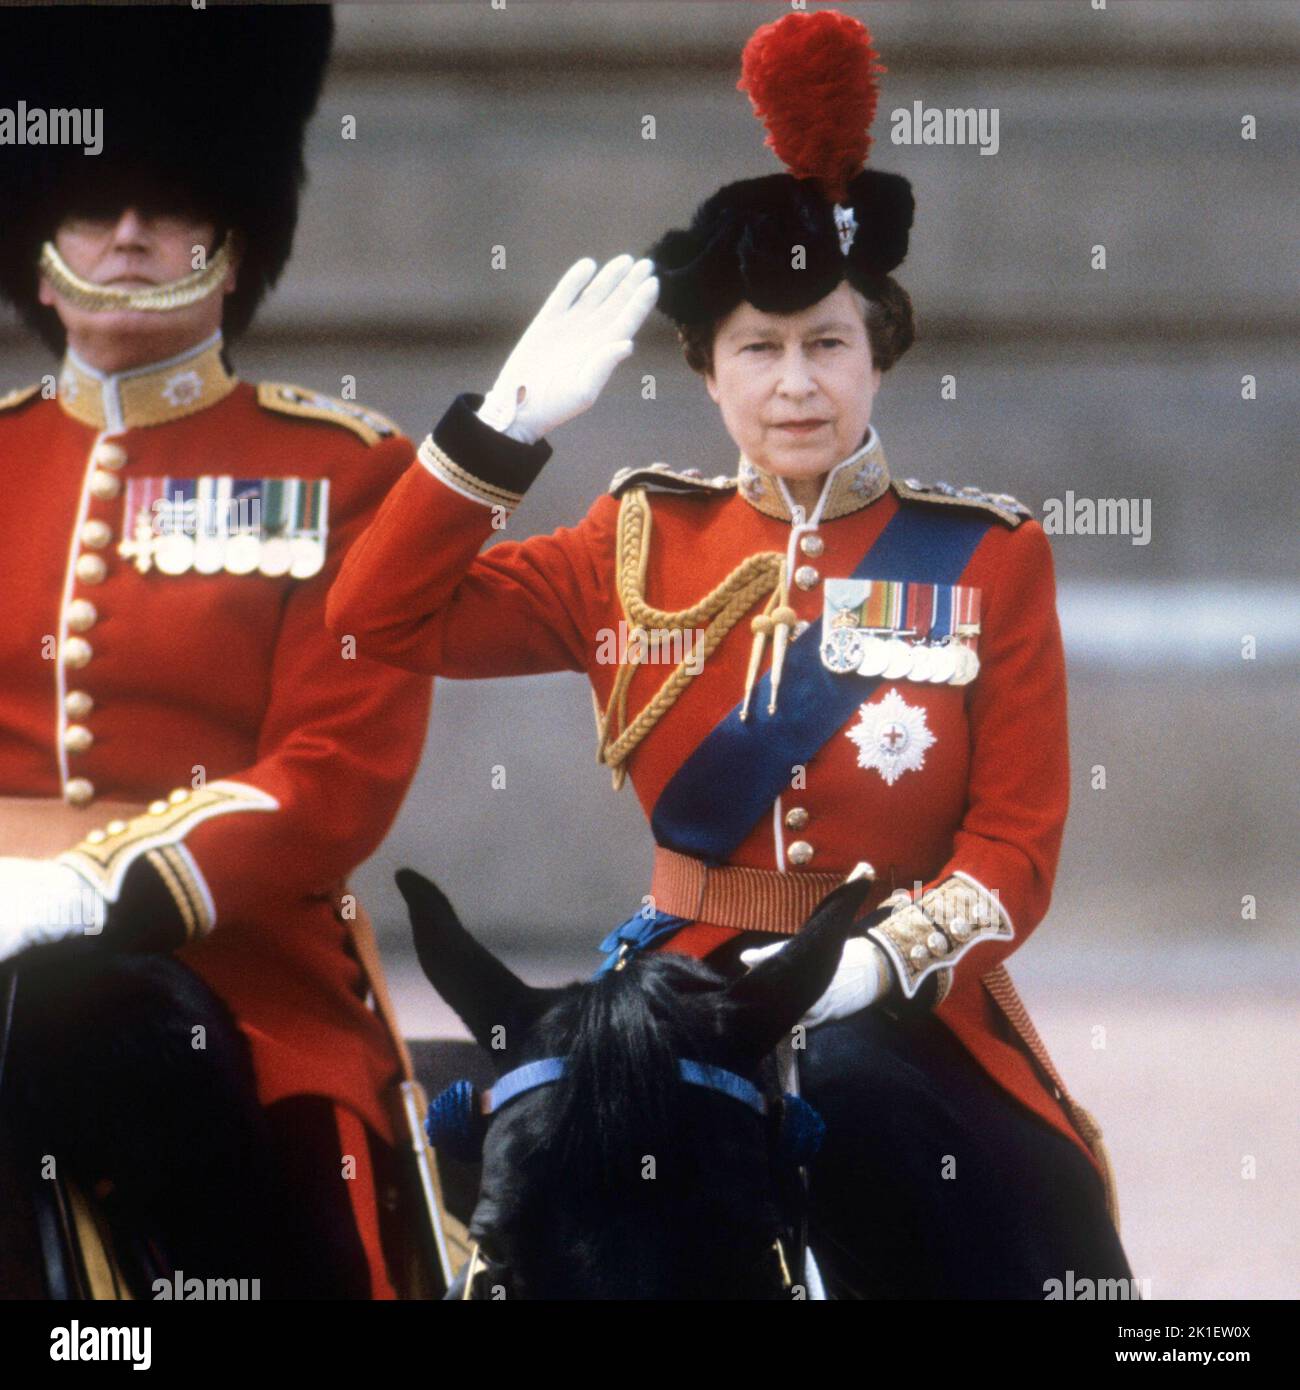 Aktenfoto vom 15/06/85 von Königin Elizabeth II., die während der Zeremonie der Farbtrooping in London den Gruß der Hausgarde-Regimenter nahm. Ausgabedatum: Sonntag, 18. September 2022.. Bildnachweis sollte lauten: PA Wire Stockfoto